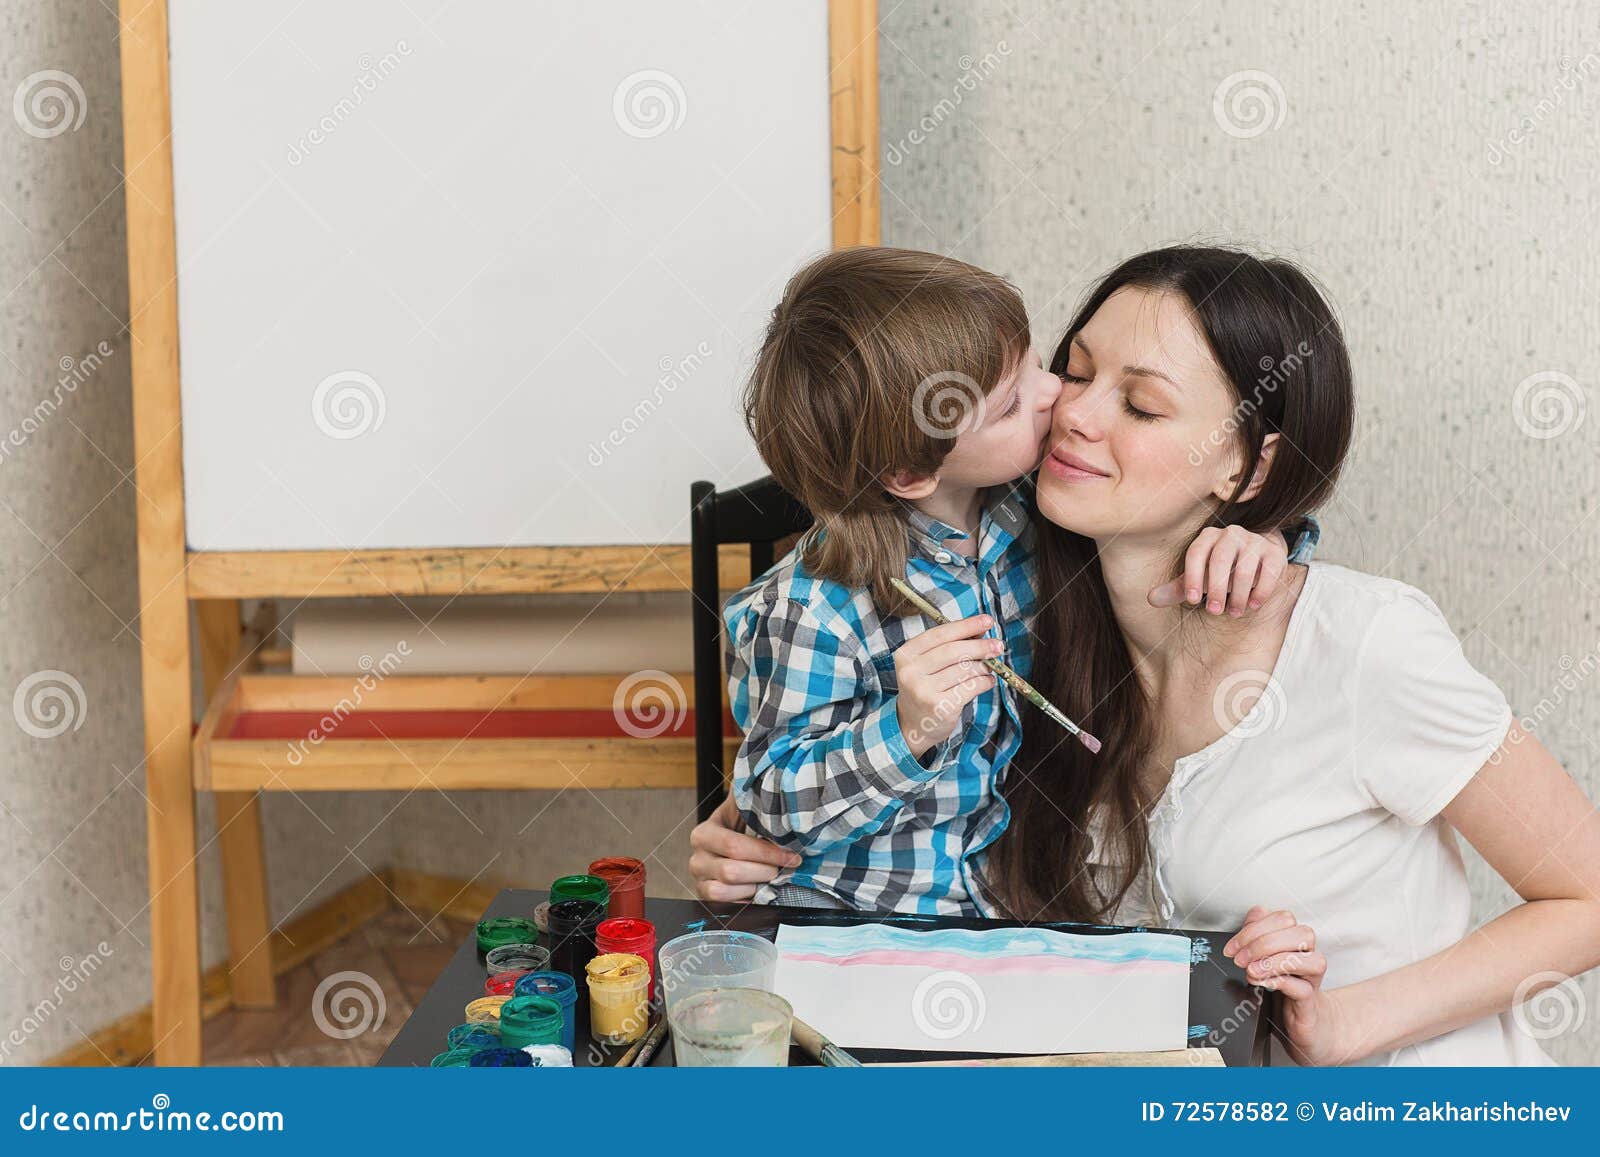 Русская мама учит сына заниматься. Мама поучает сына. Мама научила сына. Красивая мама учит сына. Мать научила сына и дочь.